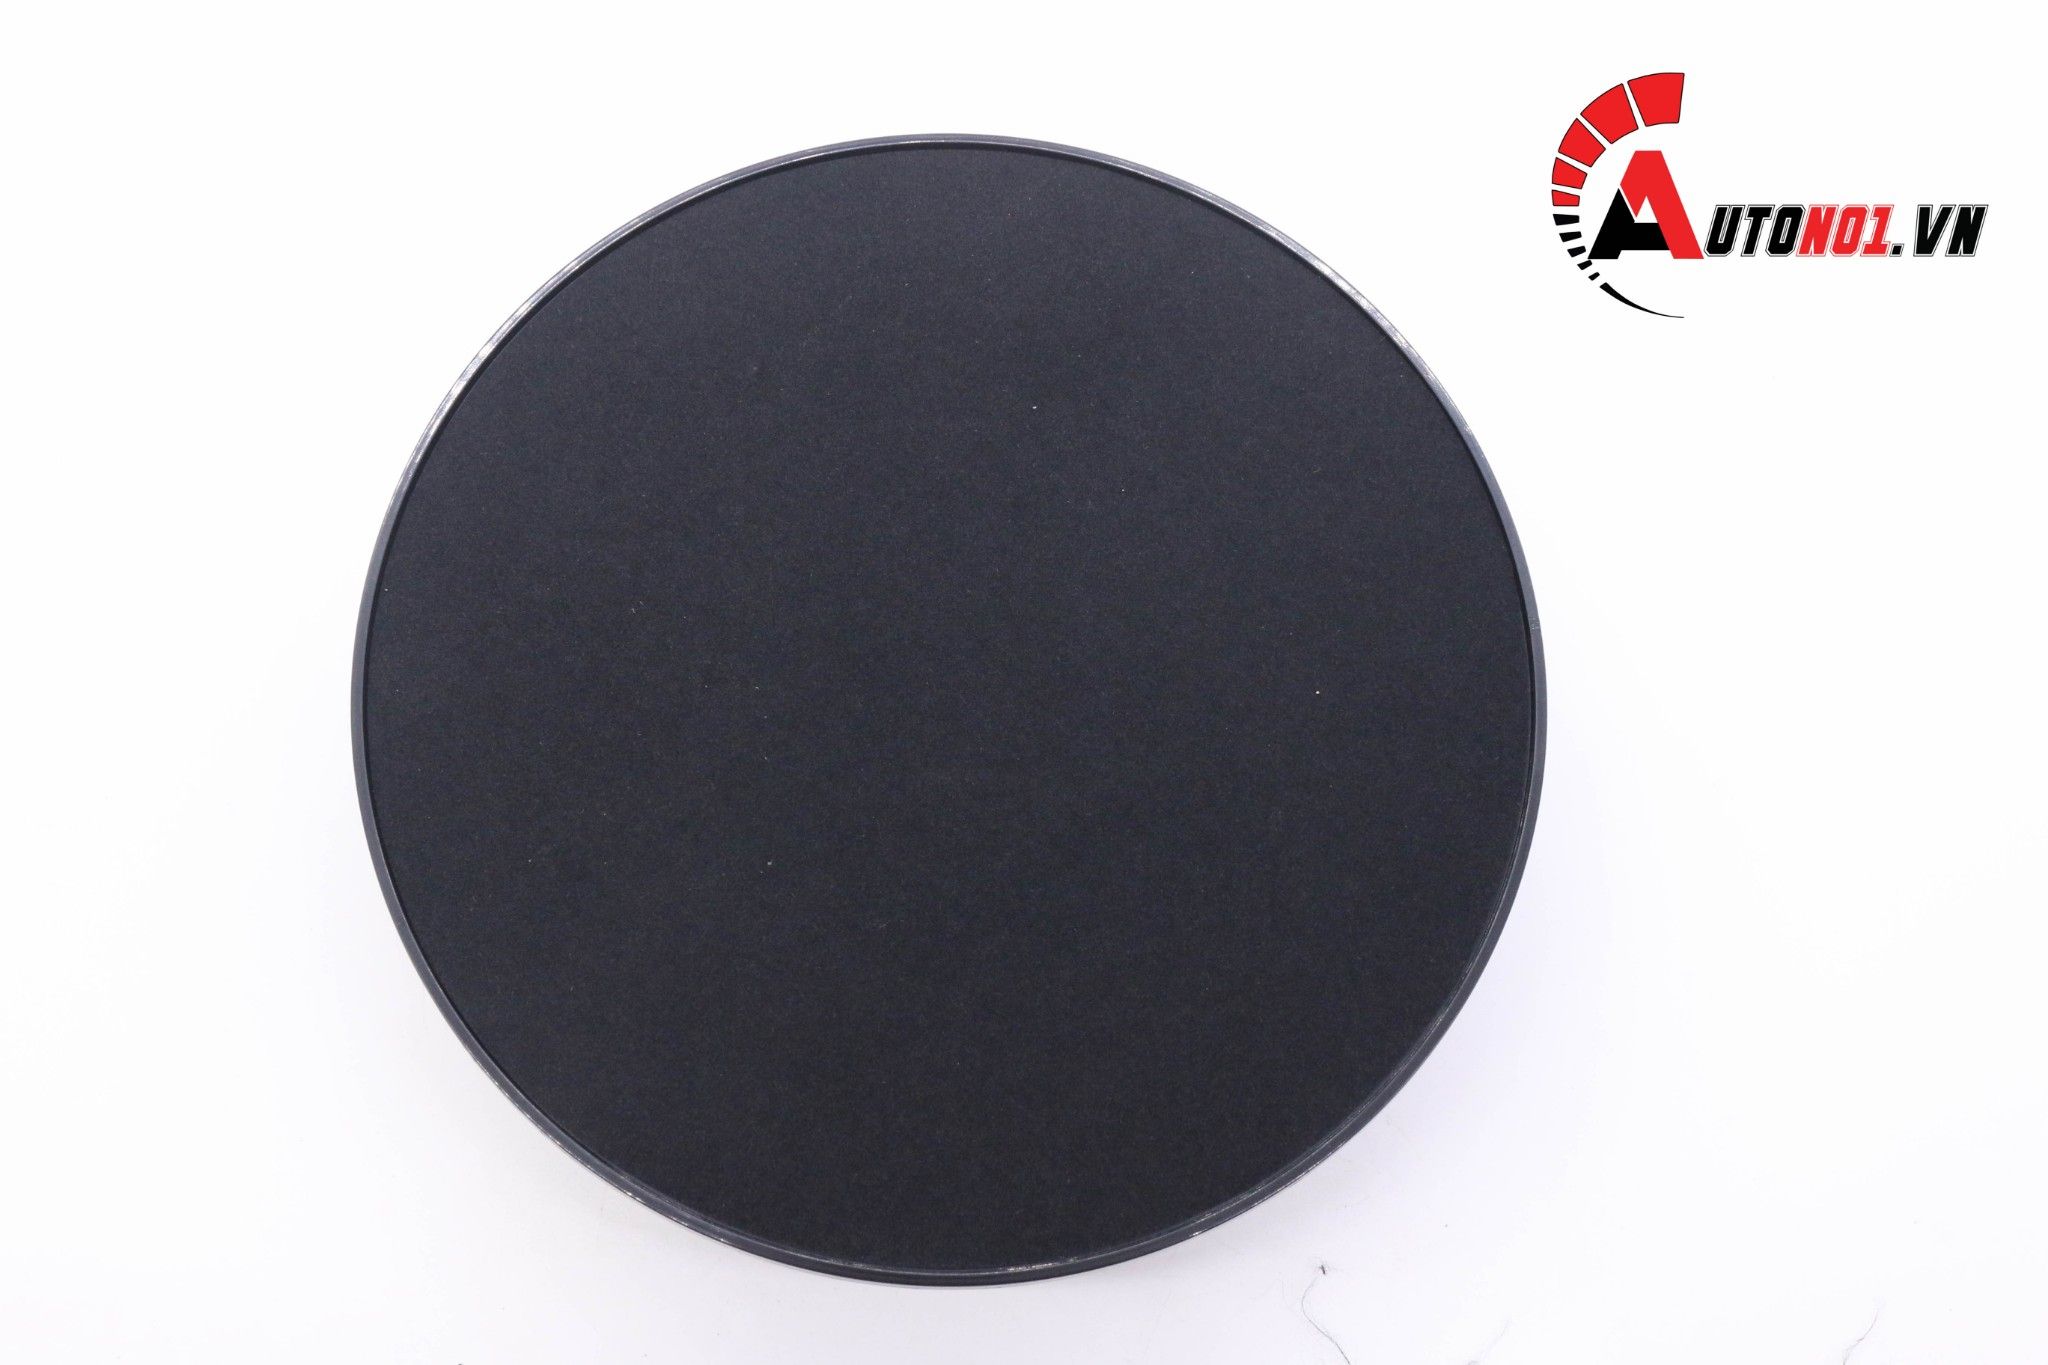  Phụ kiện đế xoay sản phẩm 360 độ màu đen mặt nhung dùng pin và điện đường kính 20cm 5370 